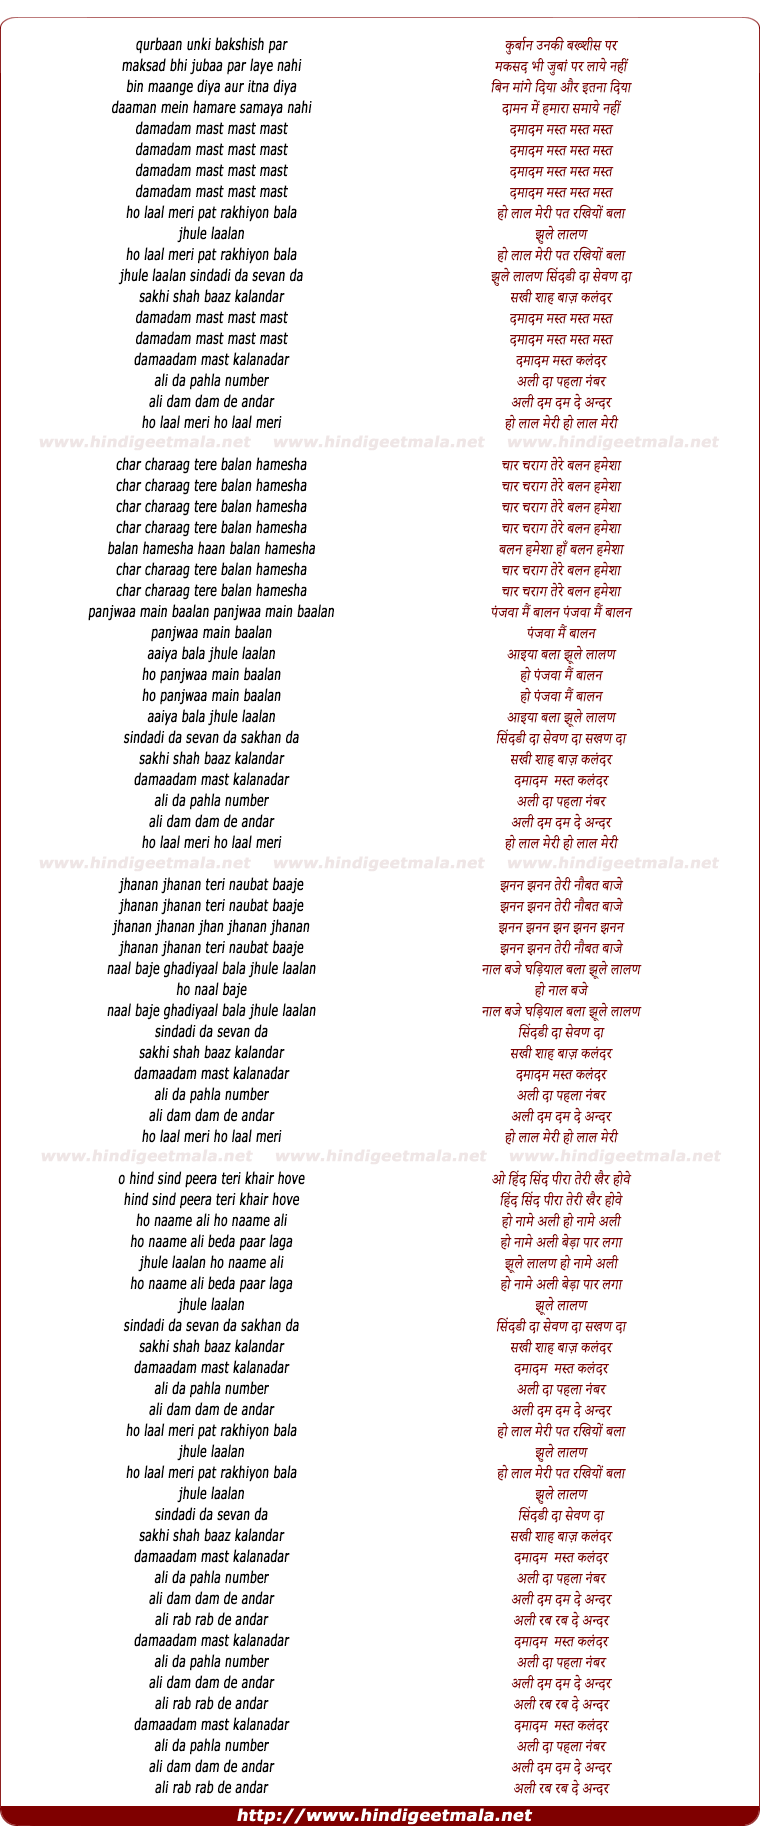 lyrics of song Dama Dam Mast Kalandar